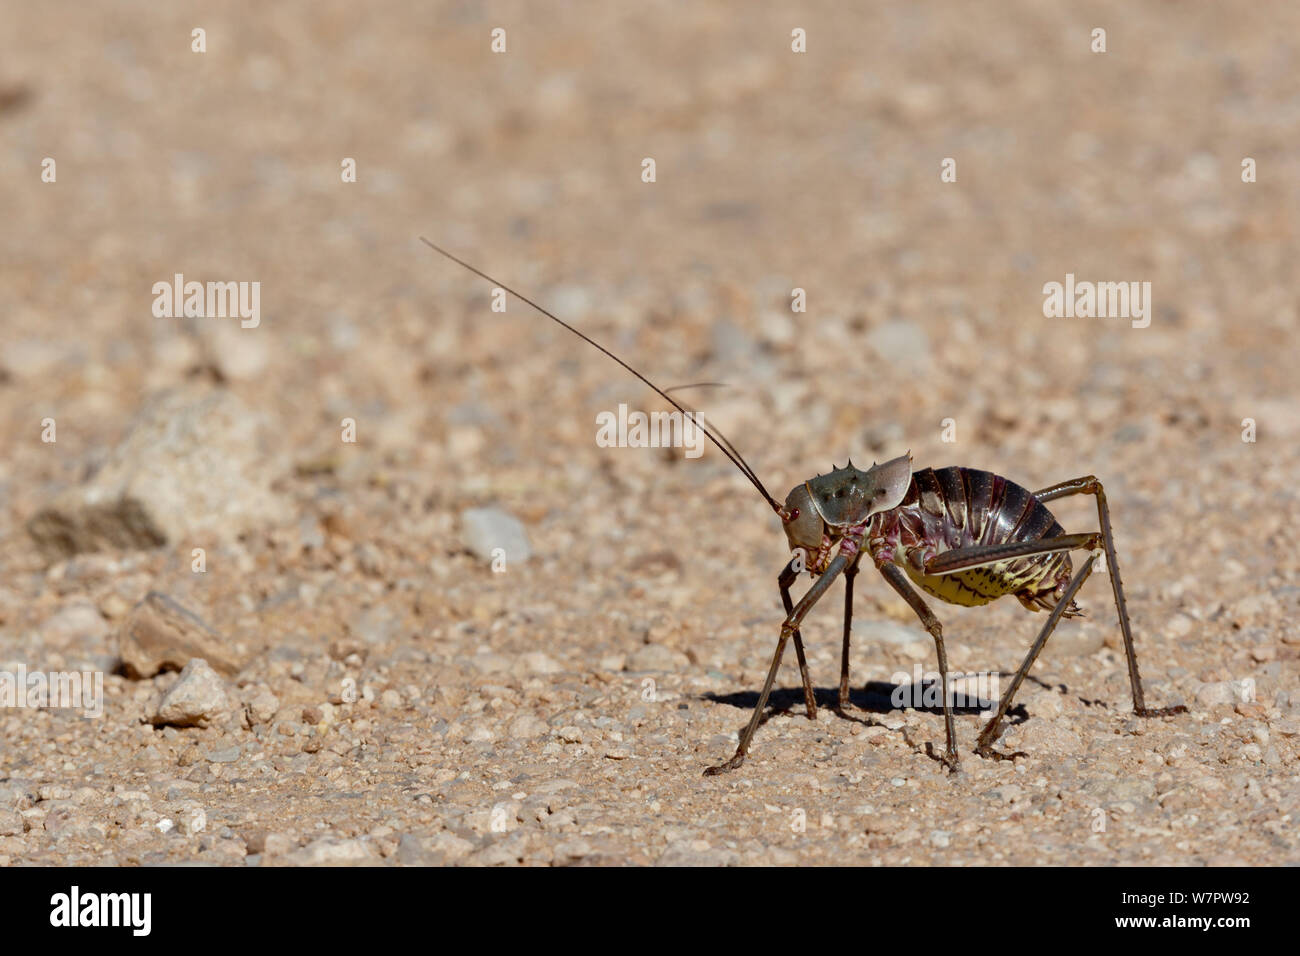 Long-horned grasshopper (Ephippiger sp) on ground, Namibia Stock Photo